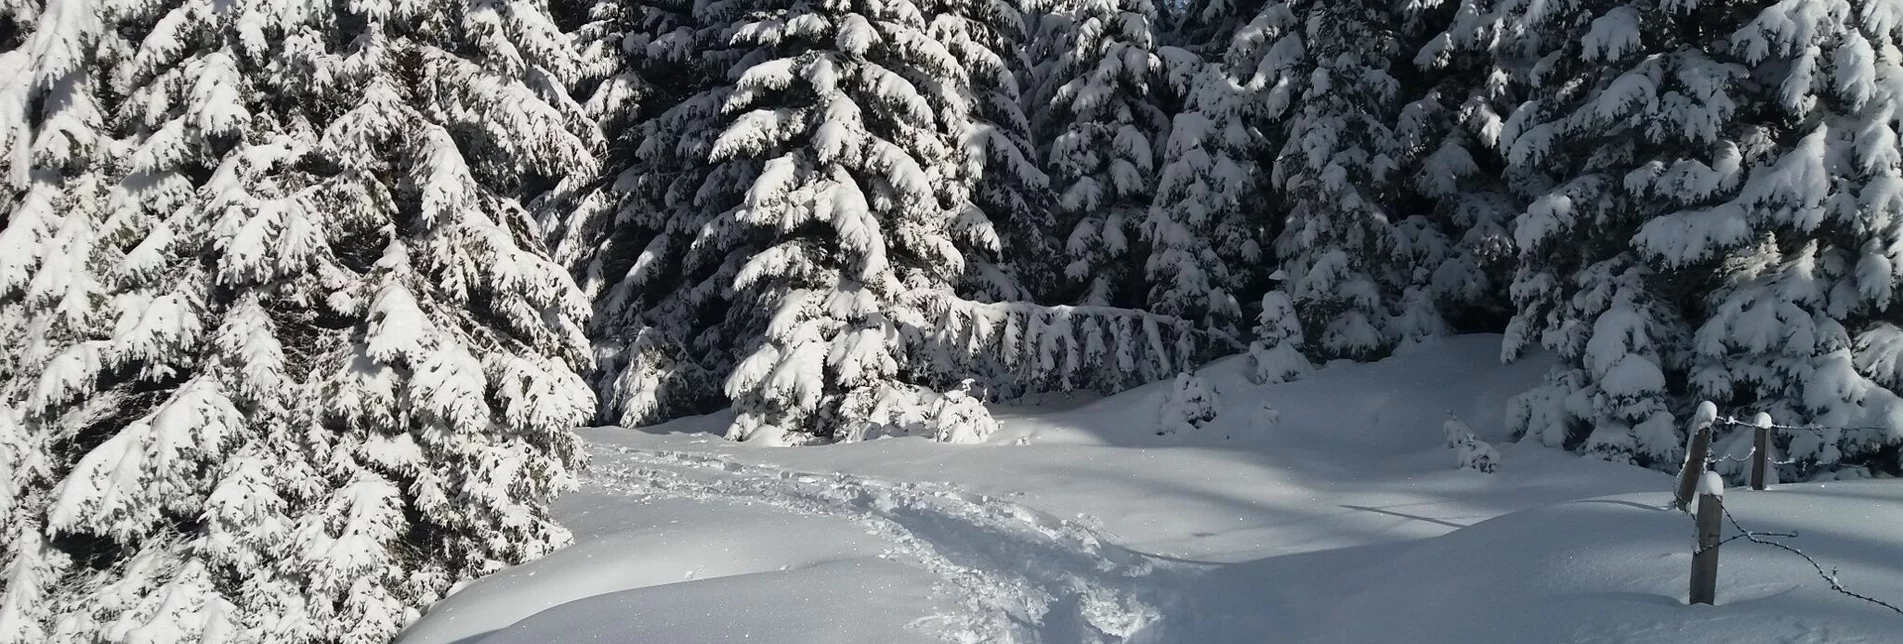 Schneeschuh Schnee(lle) Stubalm-Runde - Touren-Impression #1 | © Region Graz